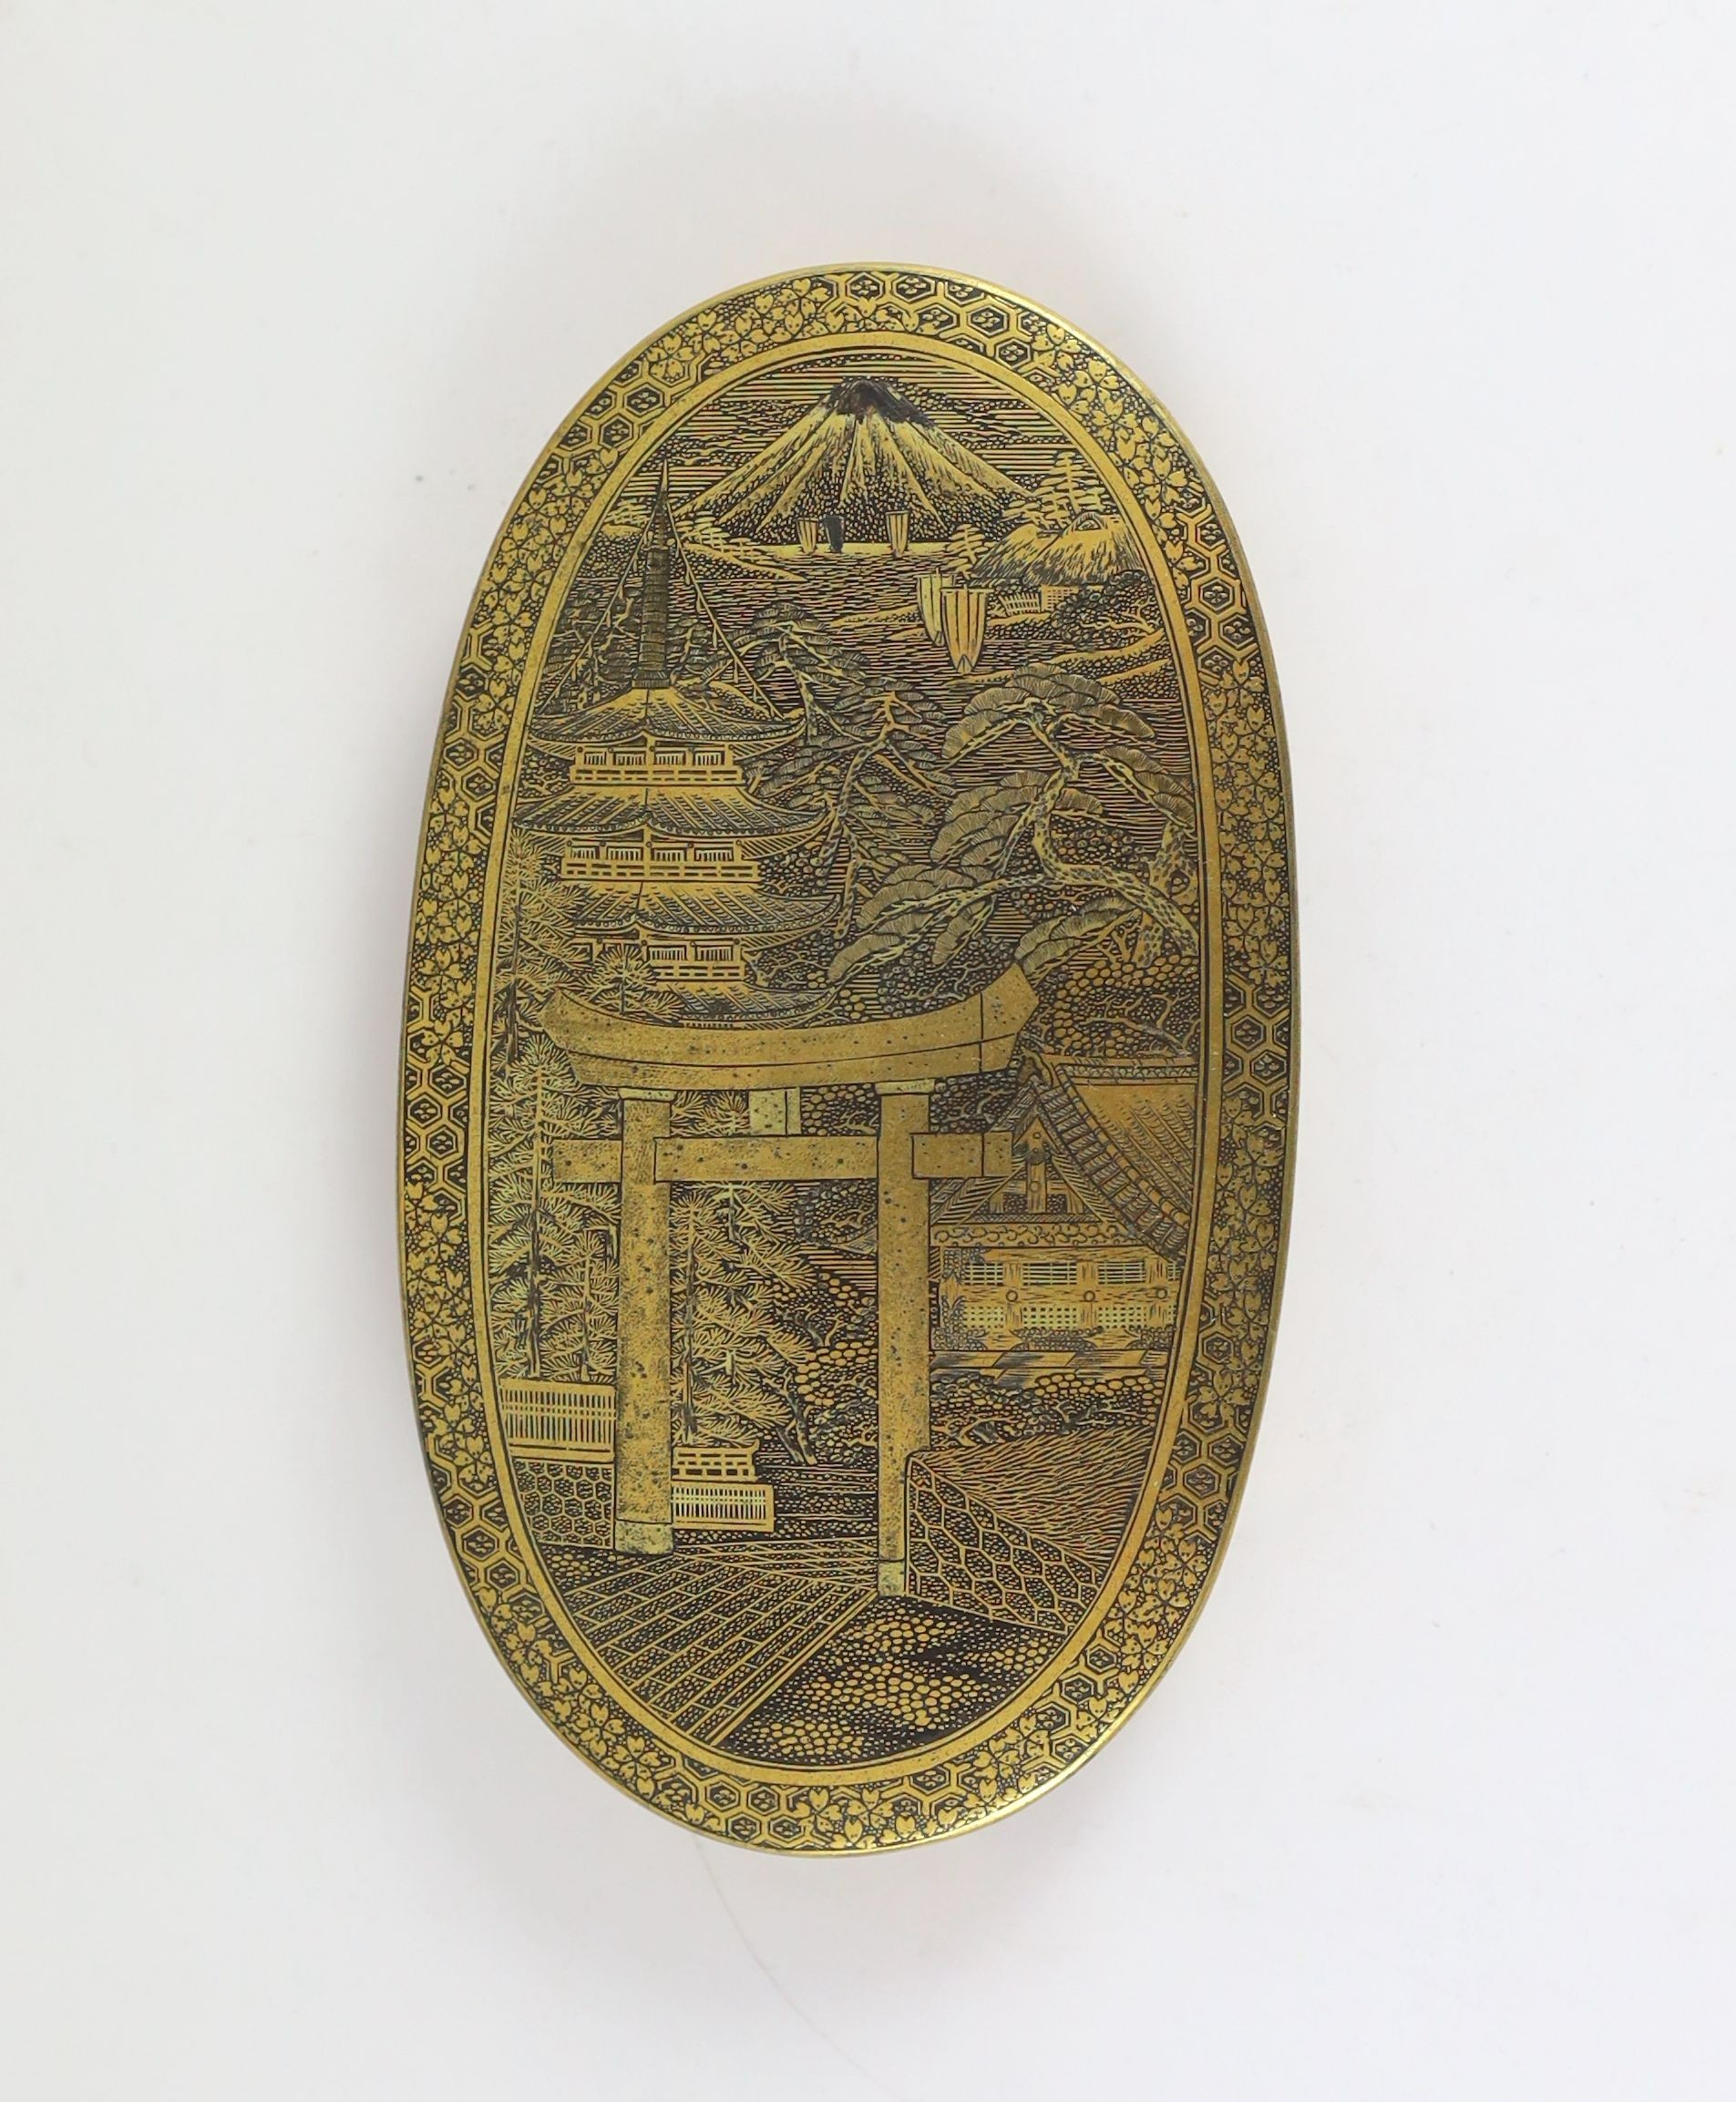 A group of Japanese damascened iron vanity items, by Fujii Yoshitoyo Damascene Co., Meiji period